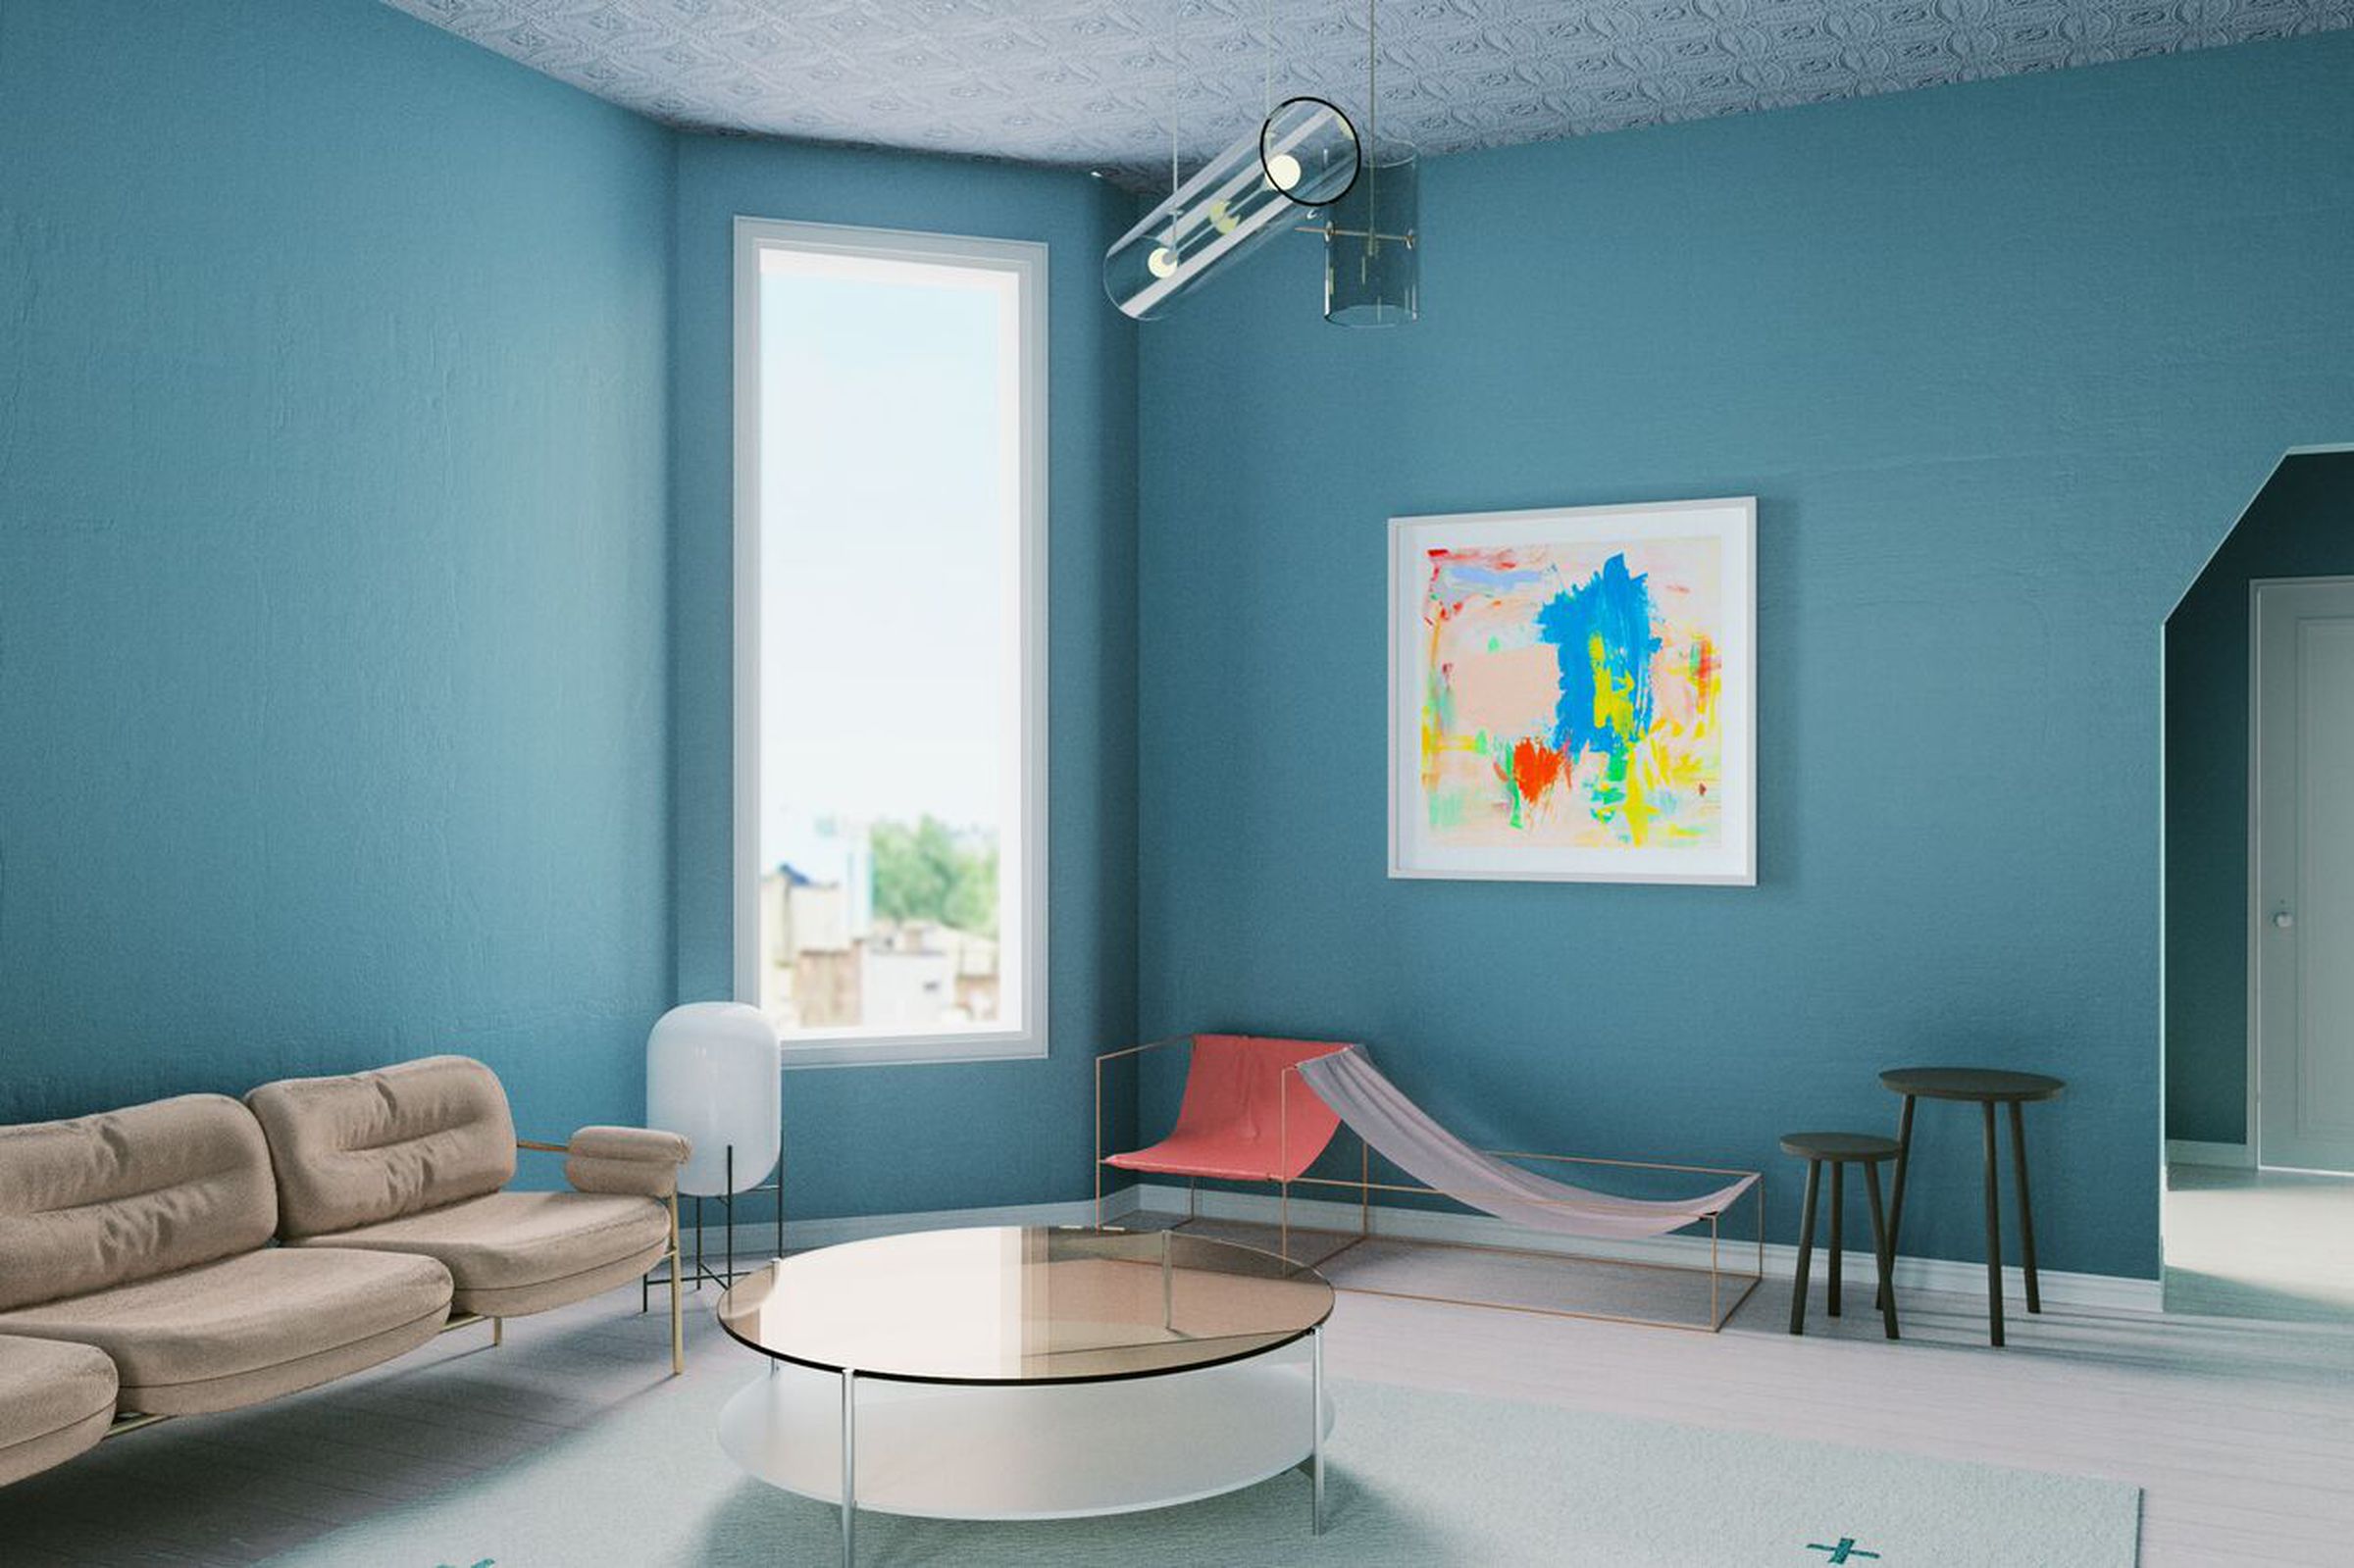 Interior trend #3- Muted Scandi Pastels, featuring artwork by Carolanna Parlato